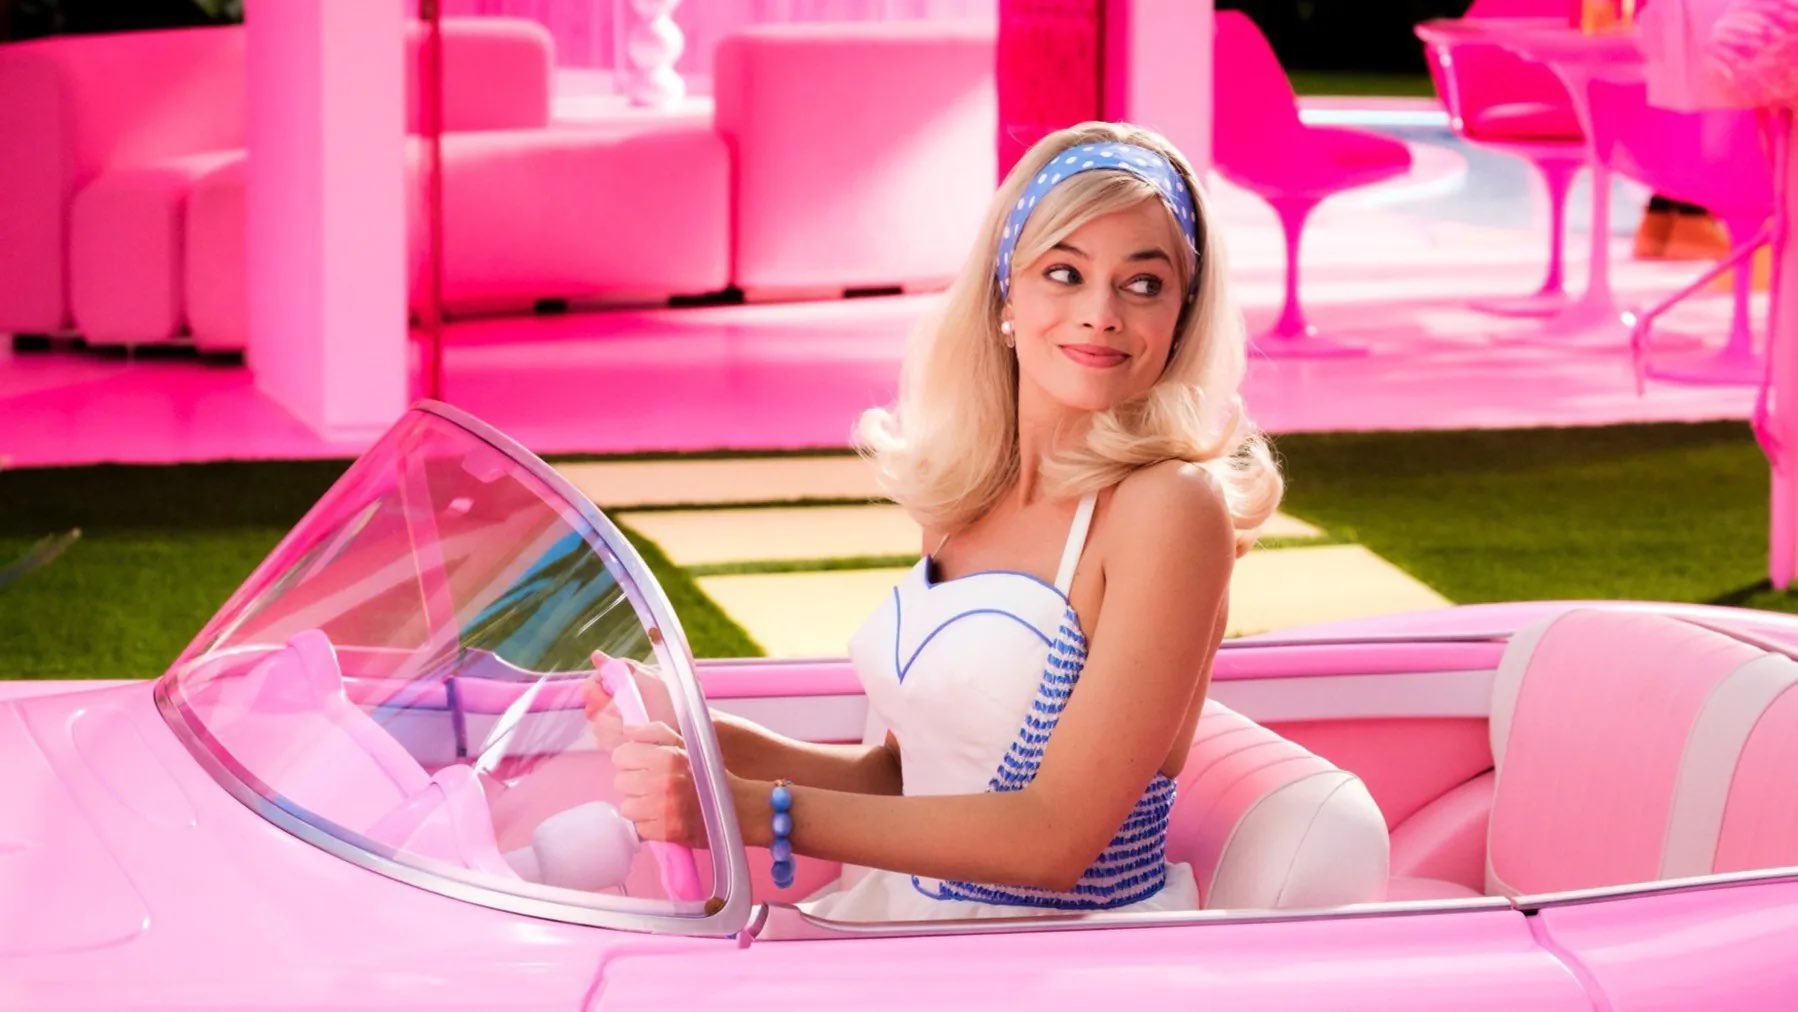 MaxiModa e RioMar Fortaleza lançam sorteio para sessão especial do filme da Barbie